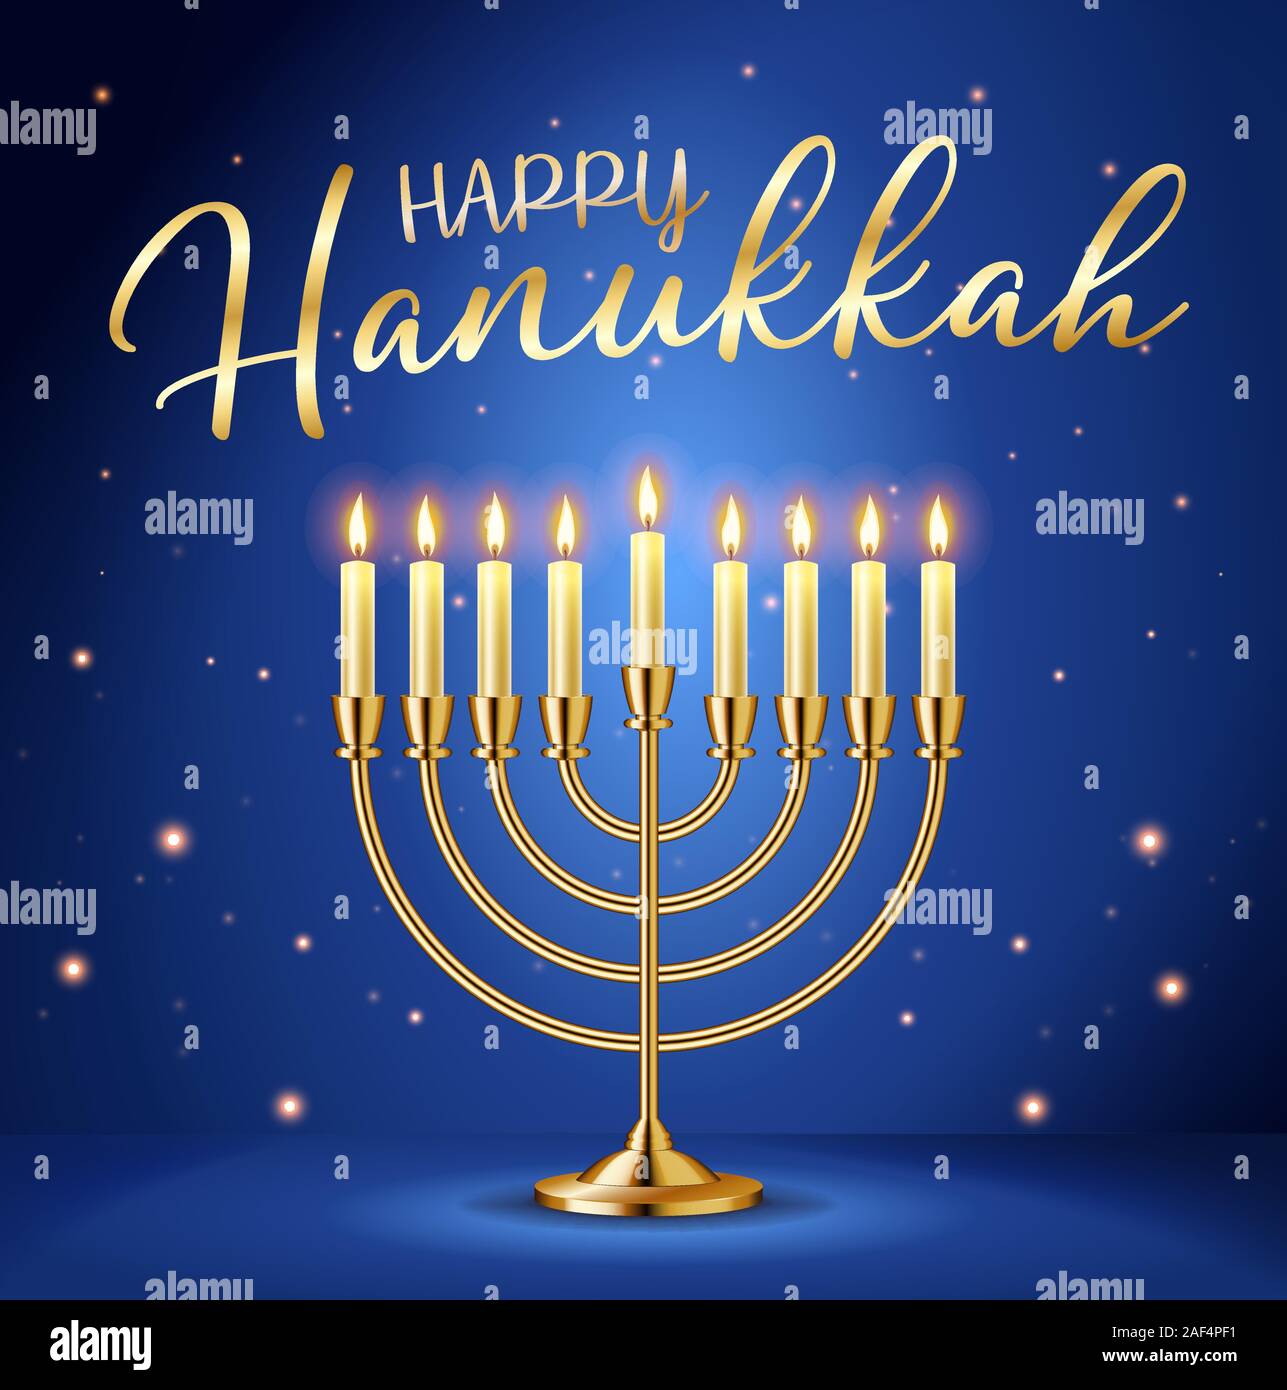 Happy Hanouka carte de souhaits avec inscription or et Golden menorah  chandelier réaliste, avec des bougies allumées Image Vectorielle Stock -  Alamy